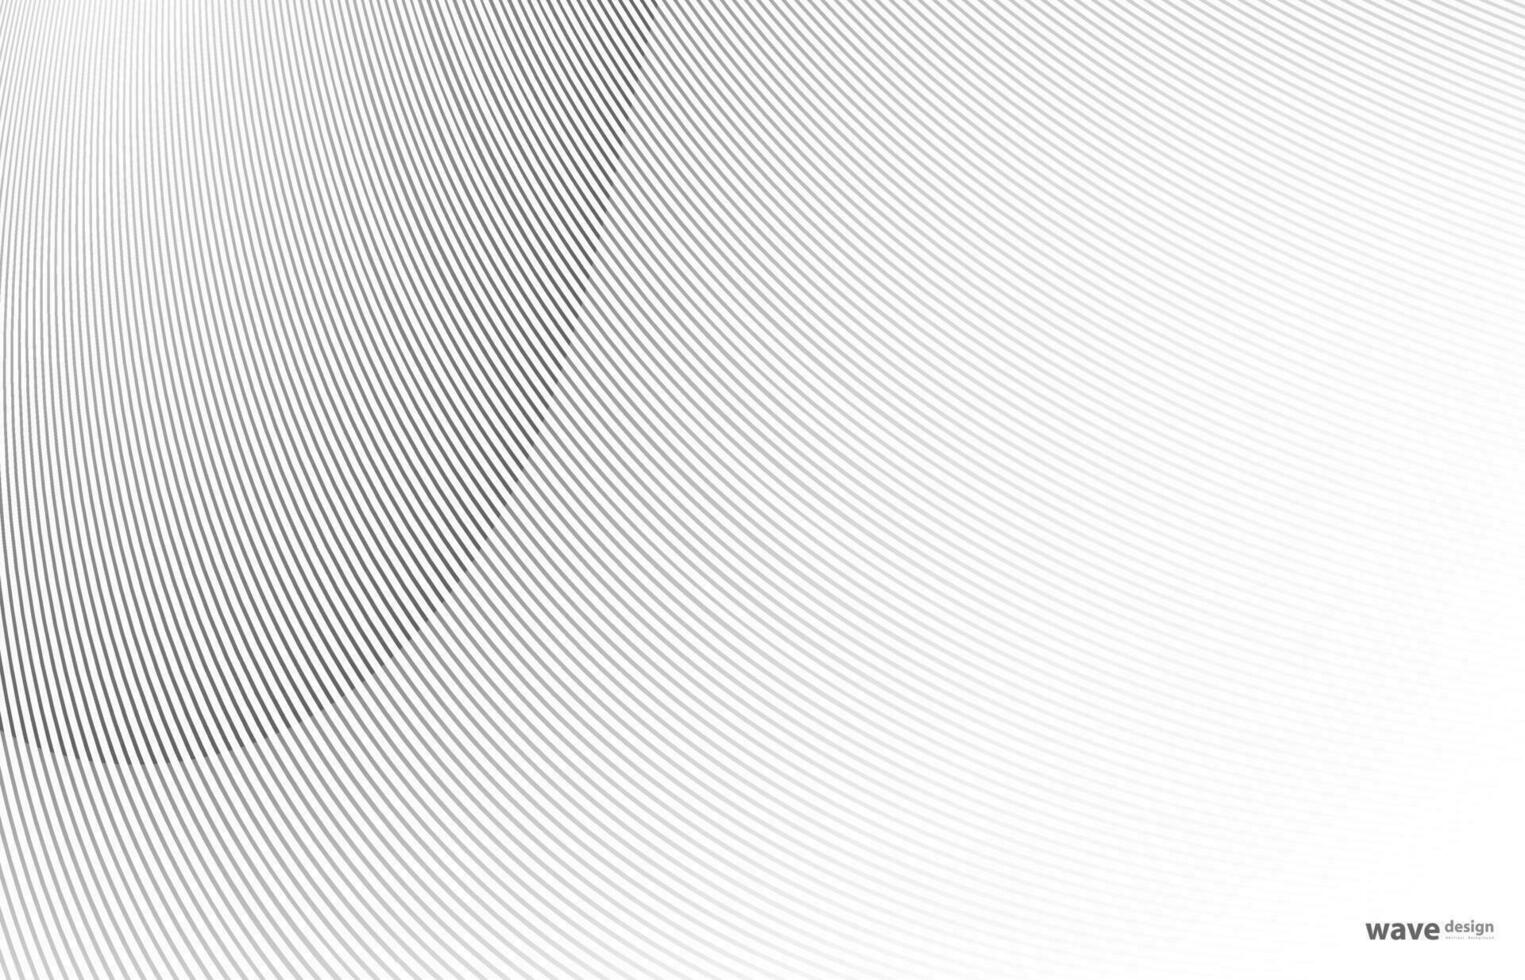 abstracte kromgetrokken diagonale gestreepte achtergrond. vector gebogen gedraaide schuine, golvende lijnentextuur. gloednieuwe stijl voor uw bedrijfsontwerp.